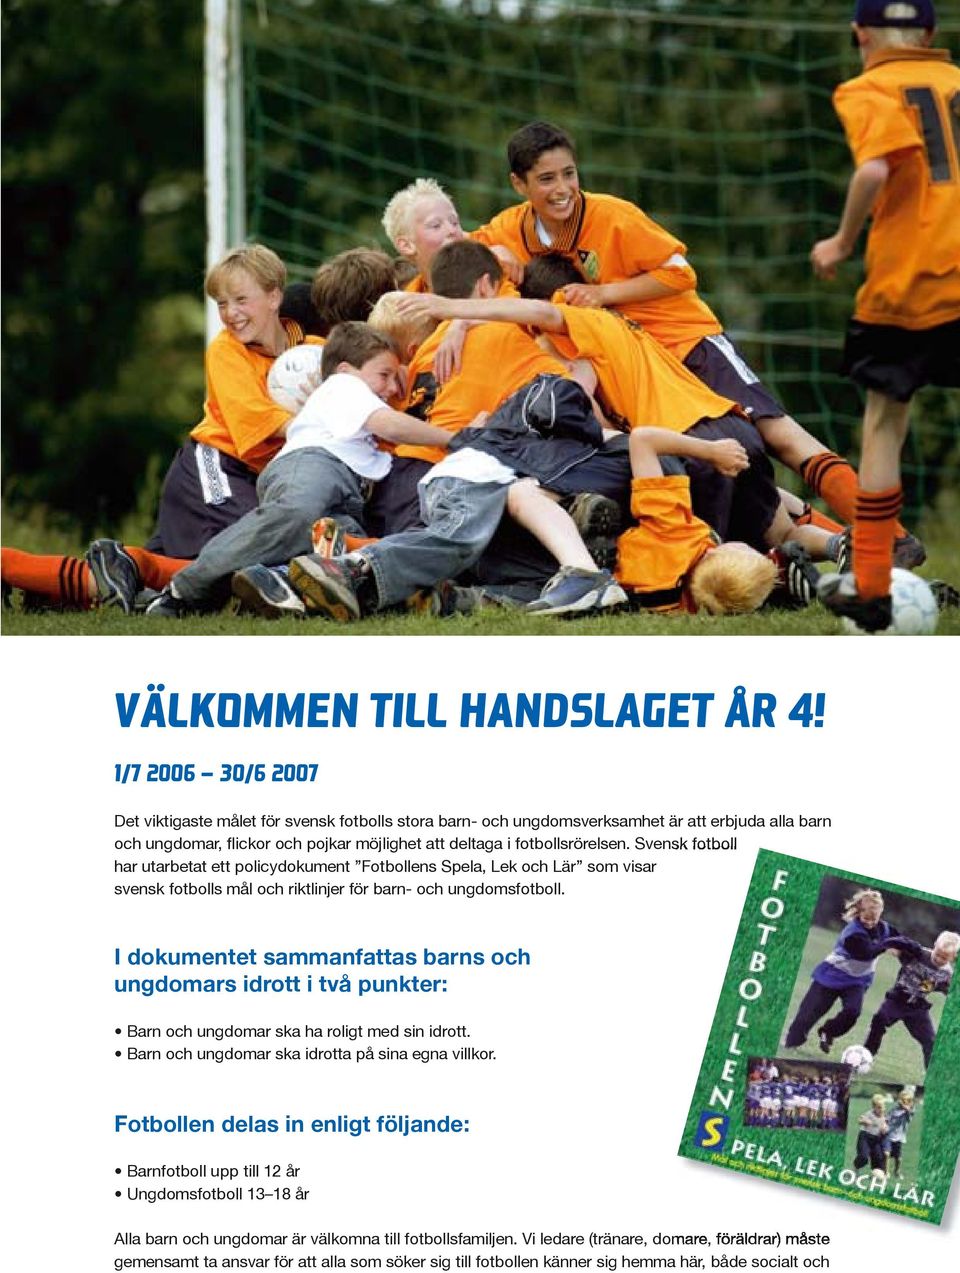 Svensk fotboll har utarbetat ett policydokument Fotbollens Spela, Lek och Lär som visar svensk fotbolls mål och riktlinjer för barn- och ungdomsfotboll.